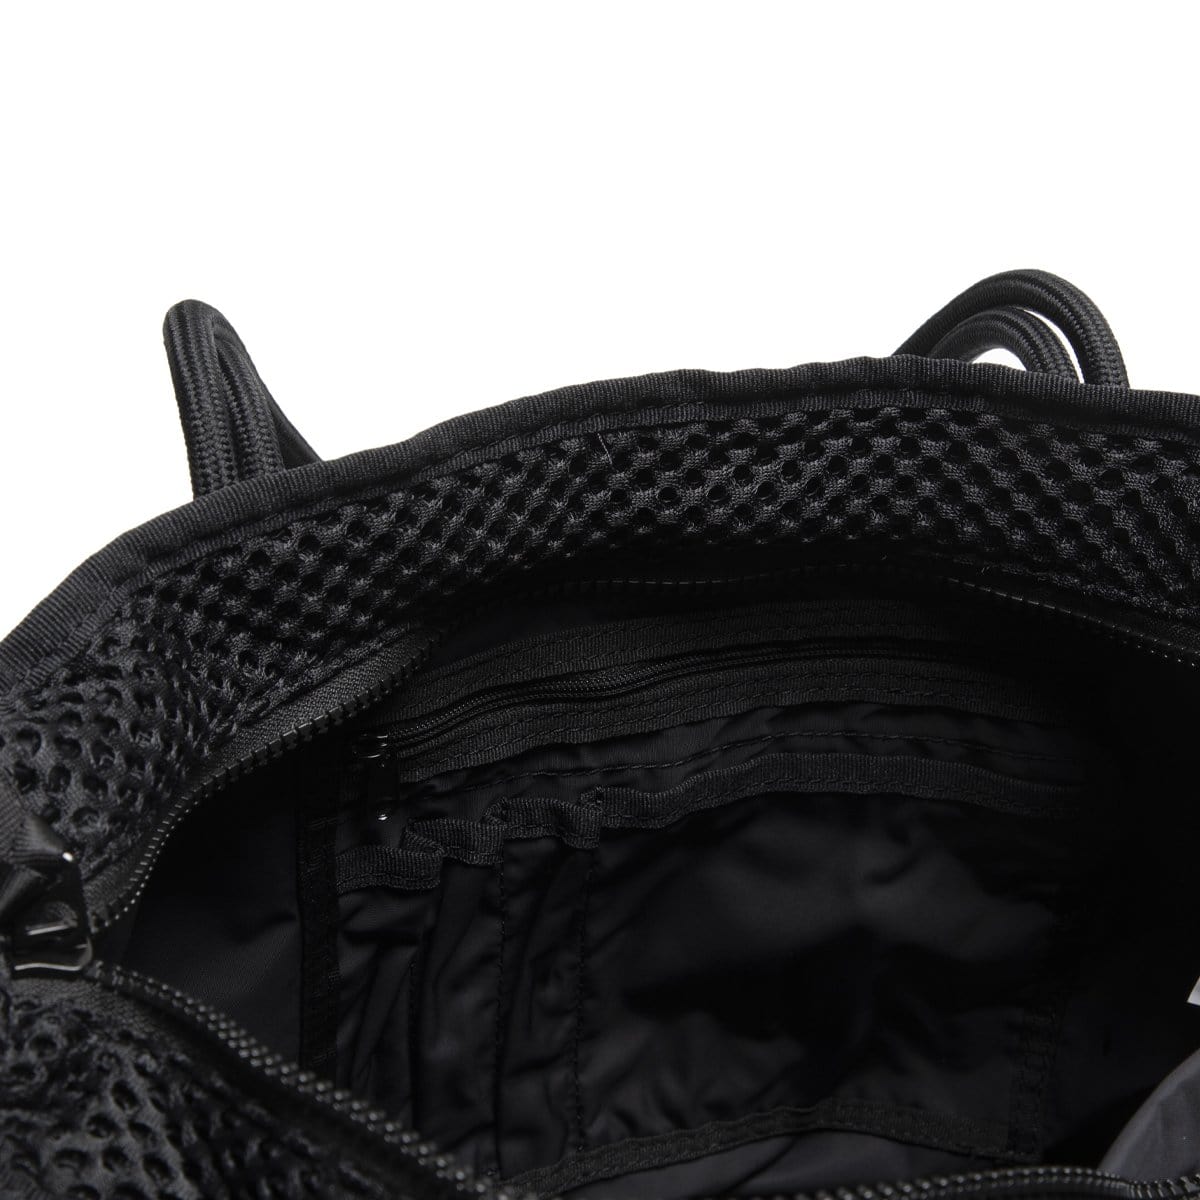 Nike, Bags, Nike Air Tote Bag Black